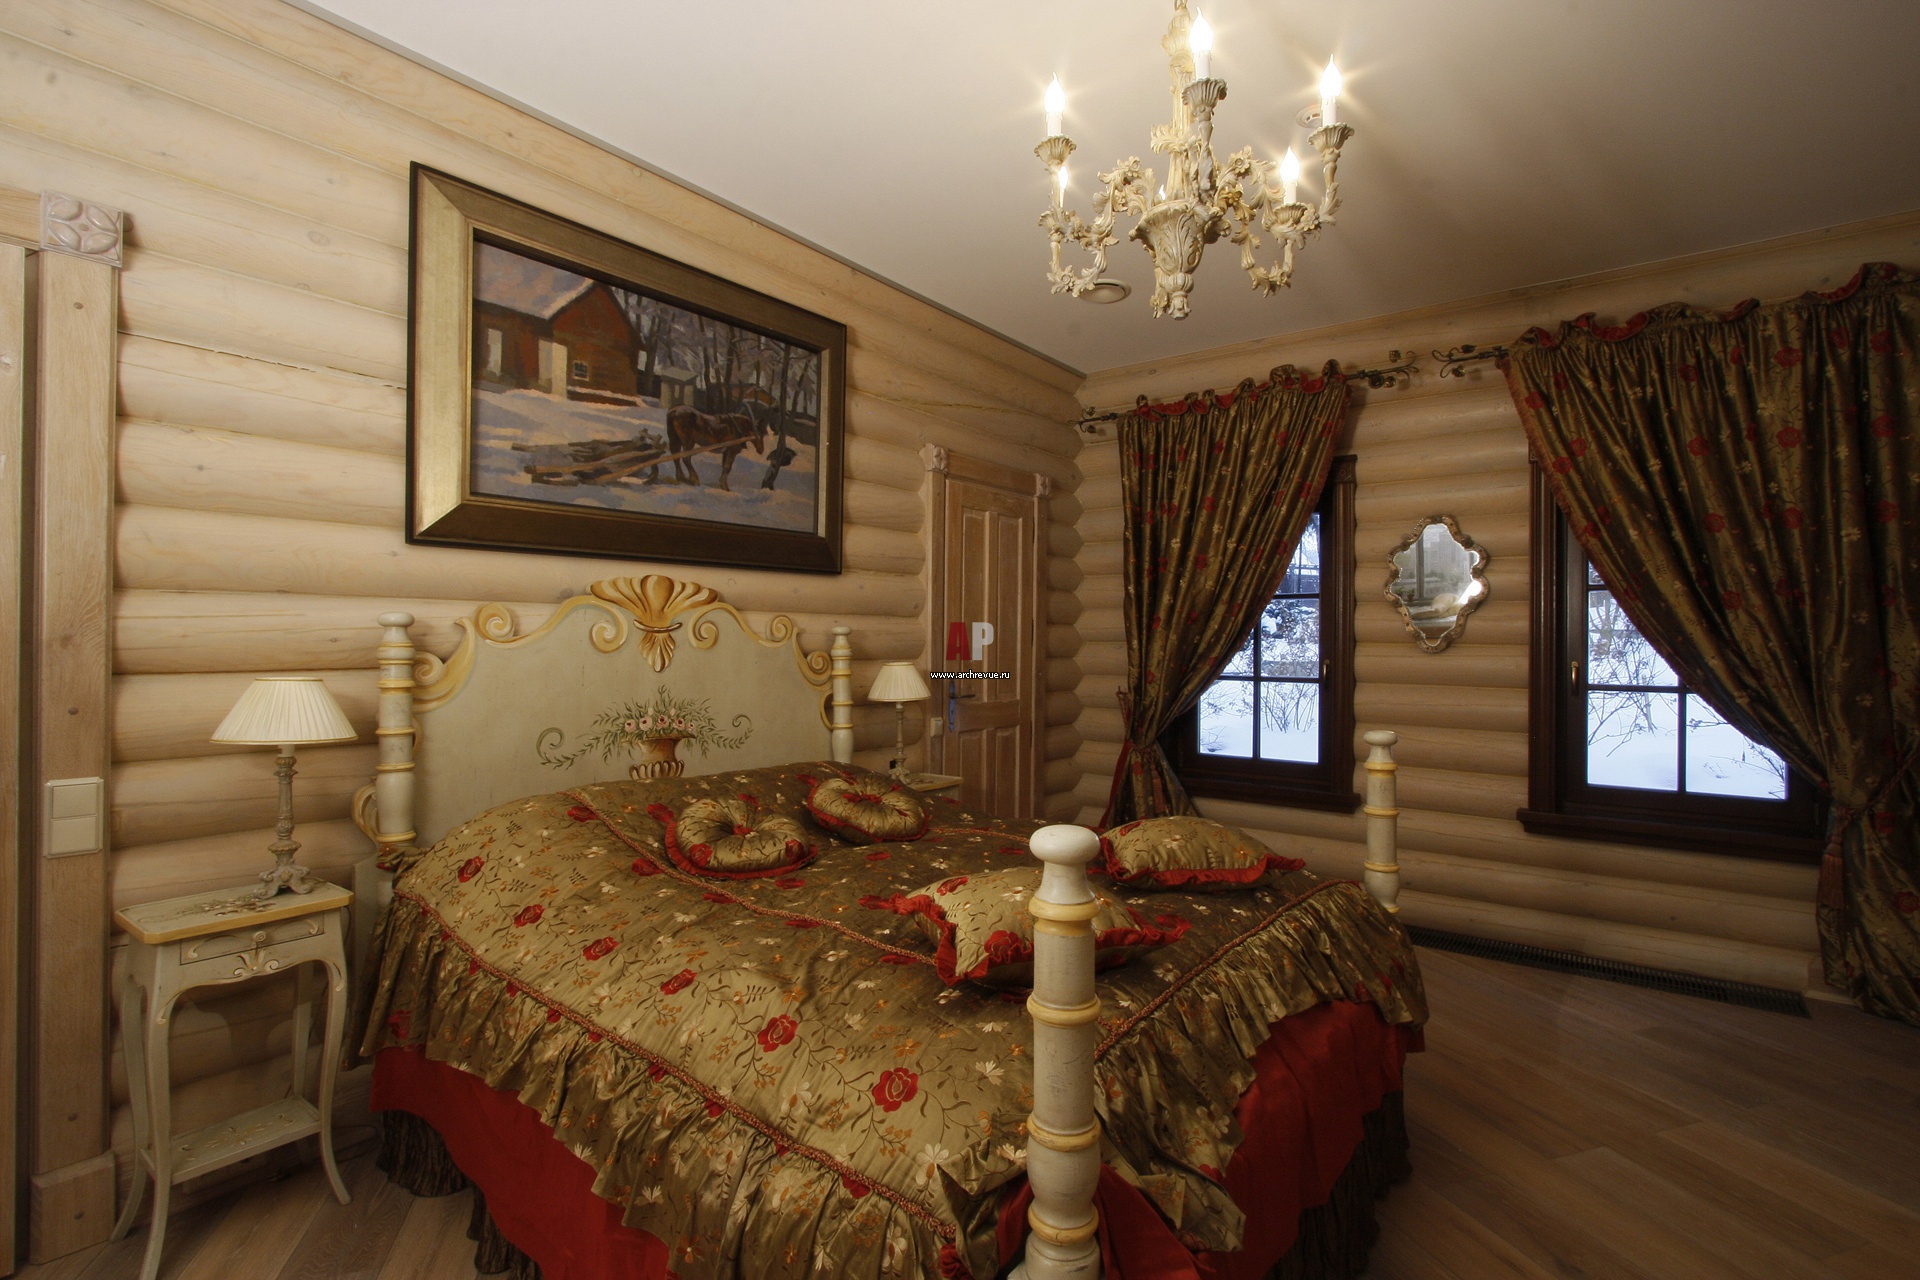 Дизайн спальной комнаты в деревянном доме » Современный дизайн на Vip .